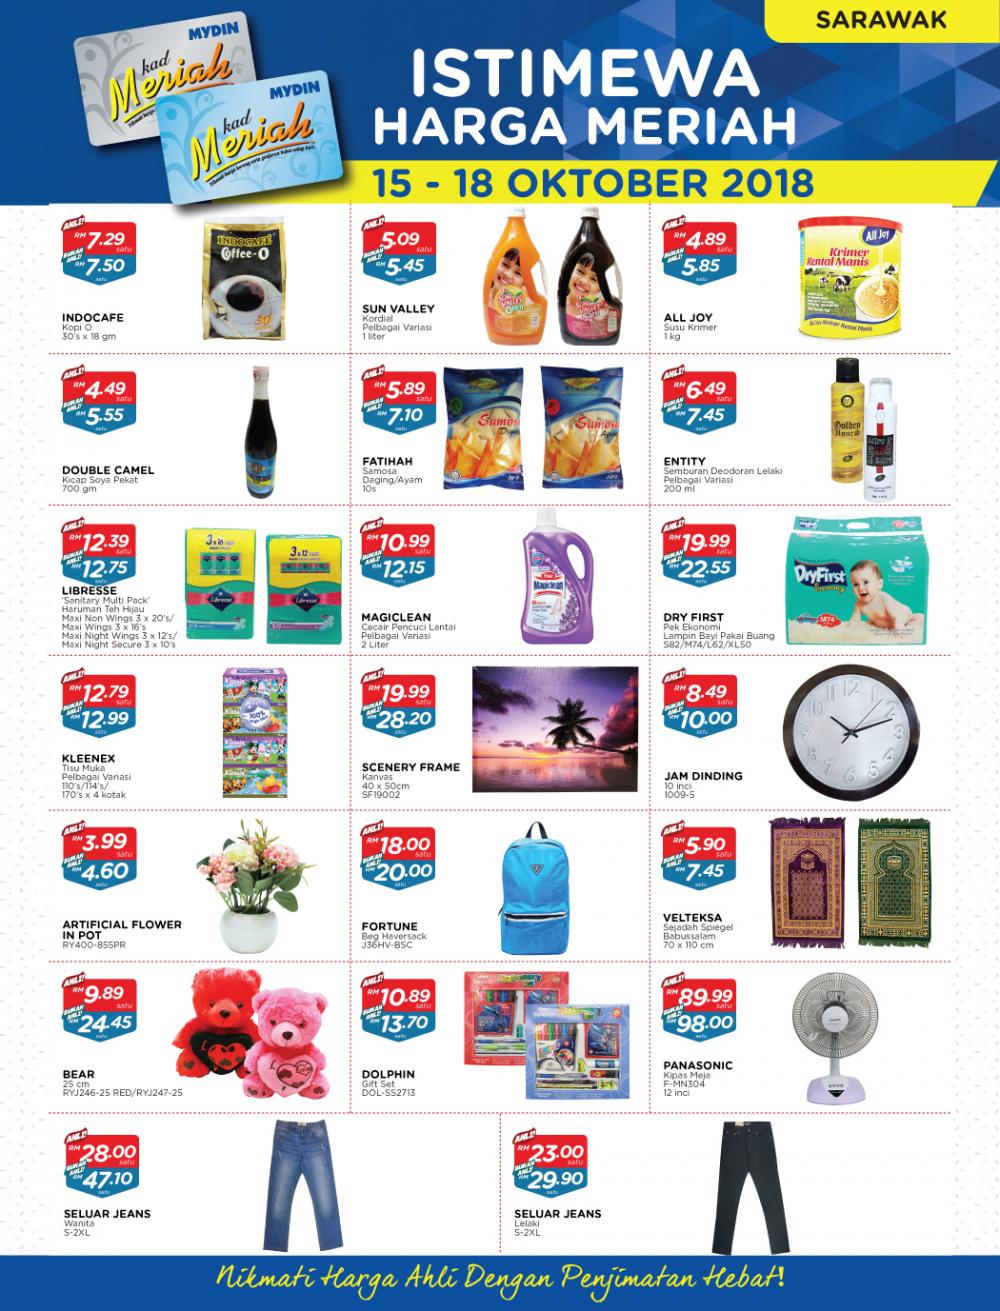 MYDIN Meriah Special Promotion at Sarawak (15 October 2018 - 18 October 2018)